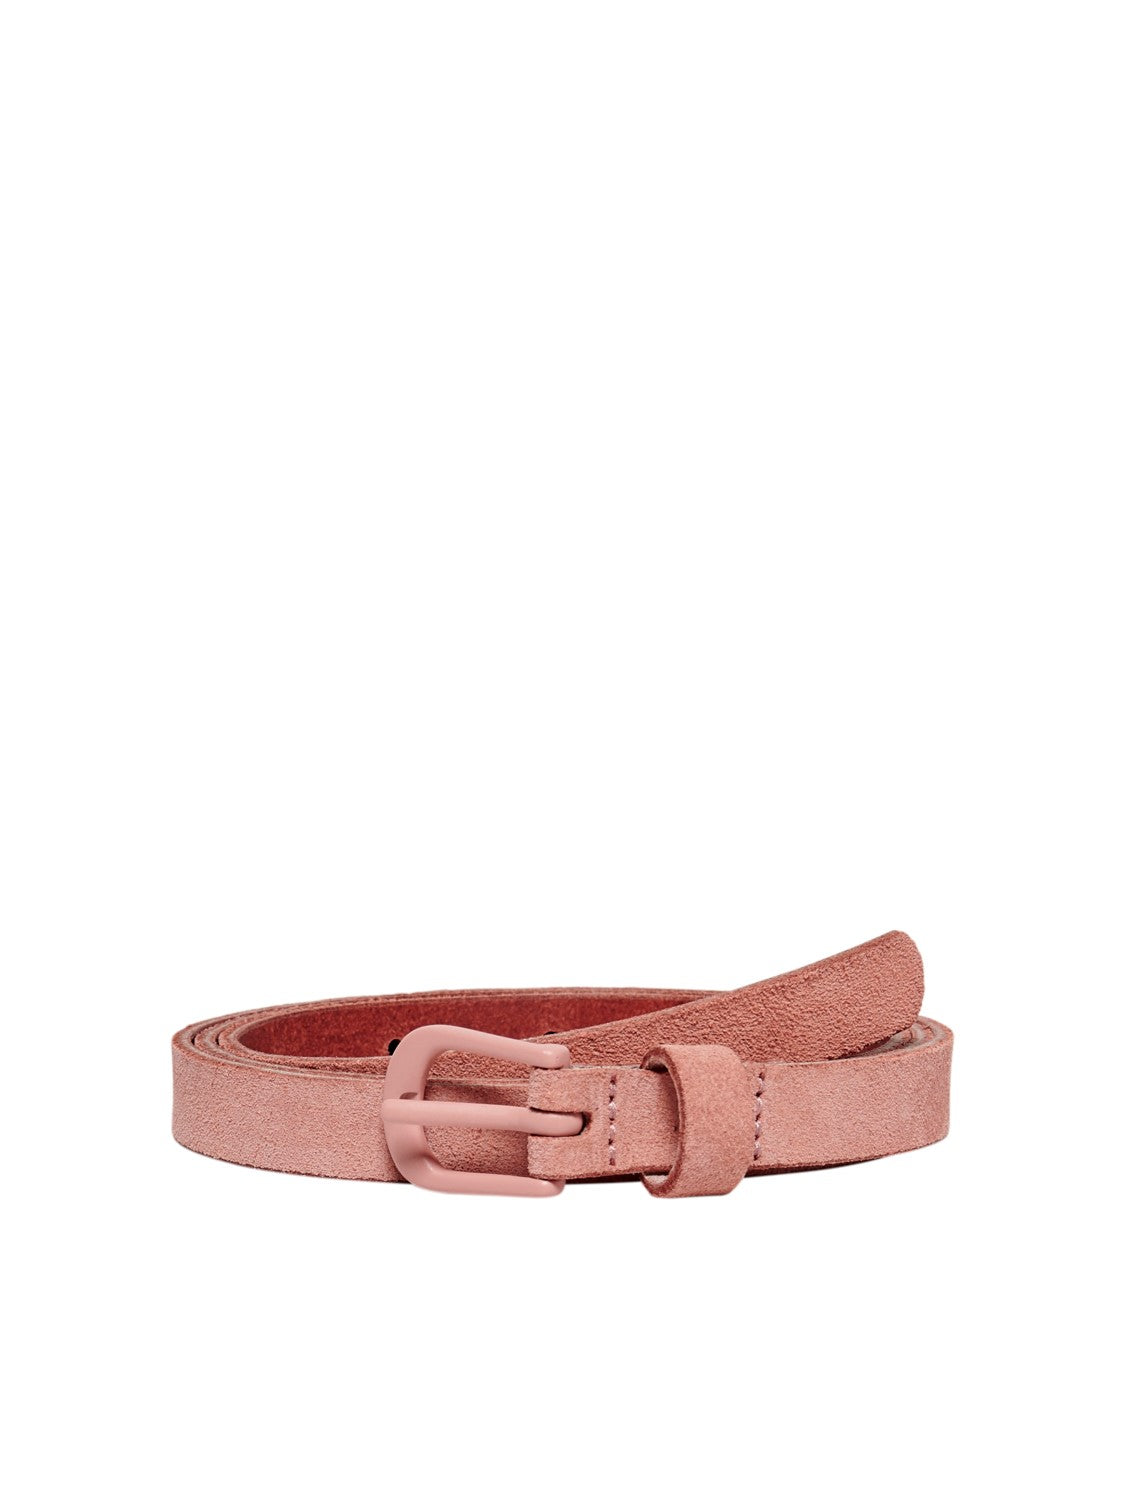 Women's suede belt (3 colors)